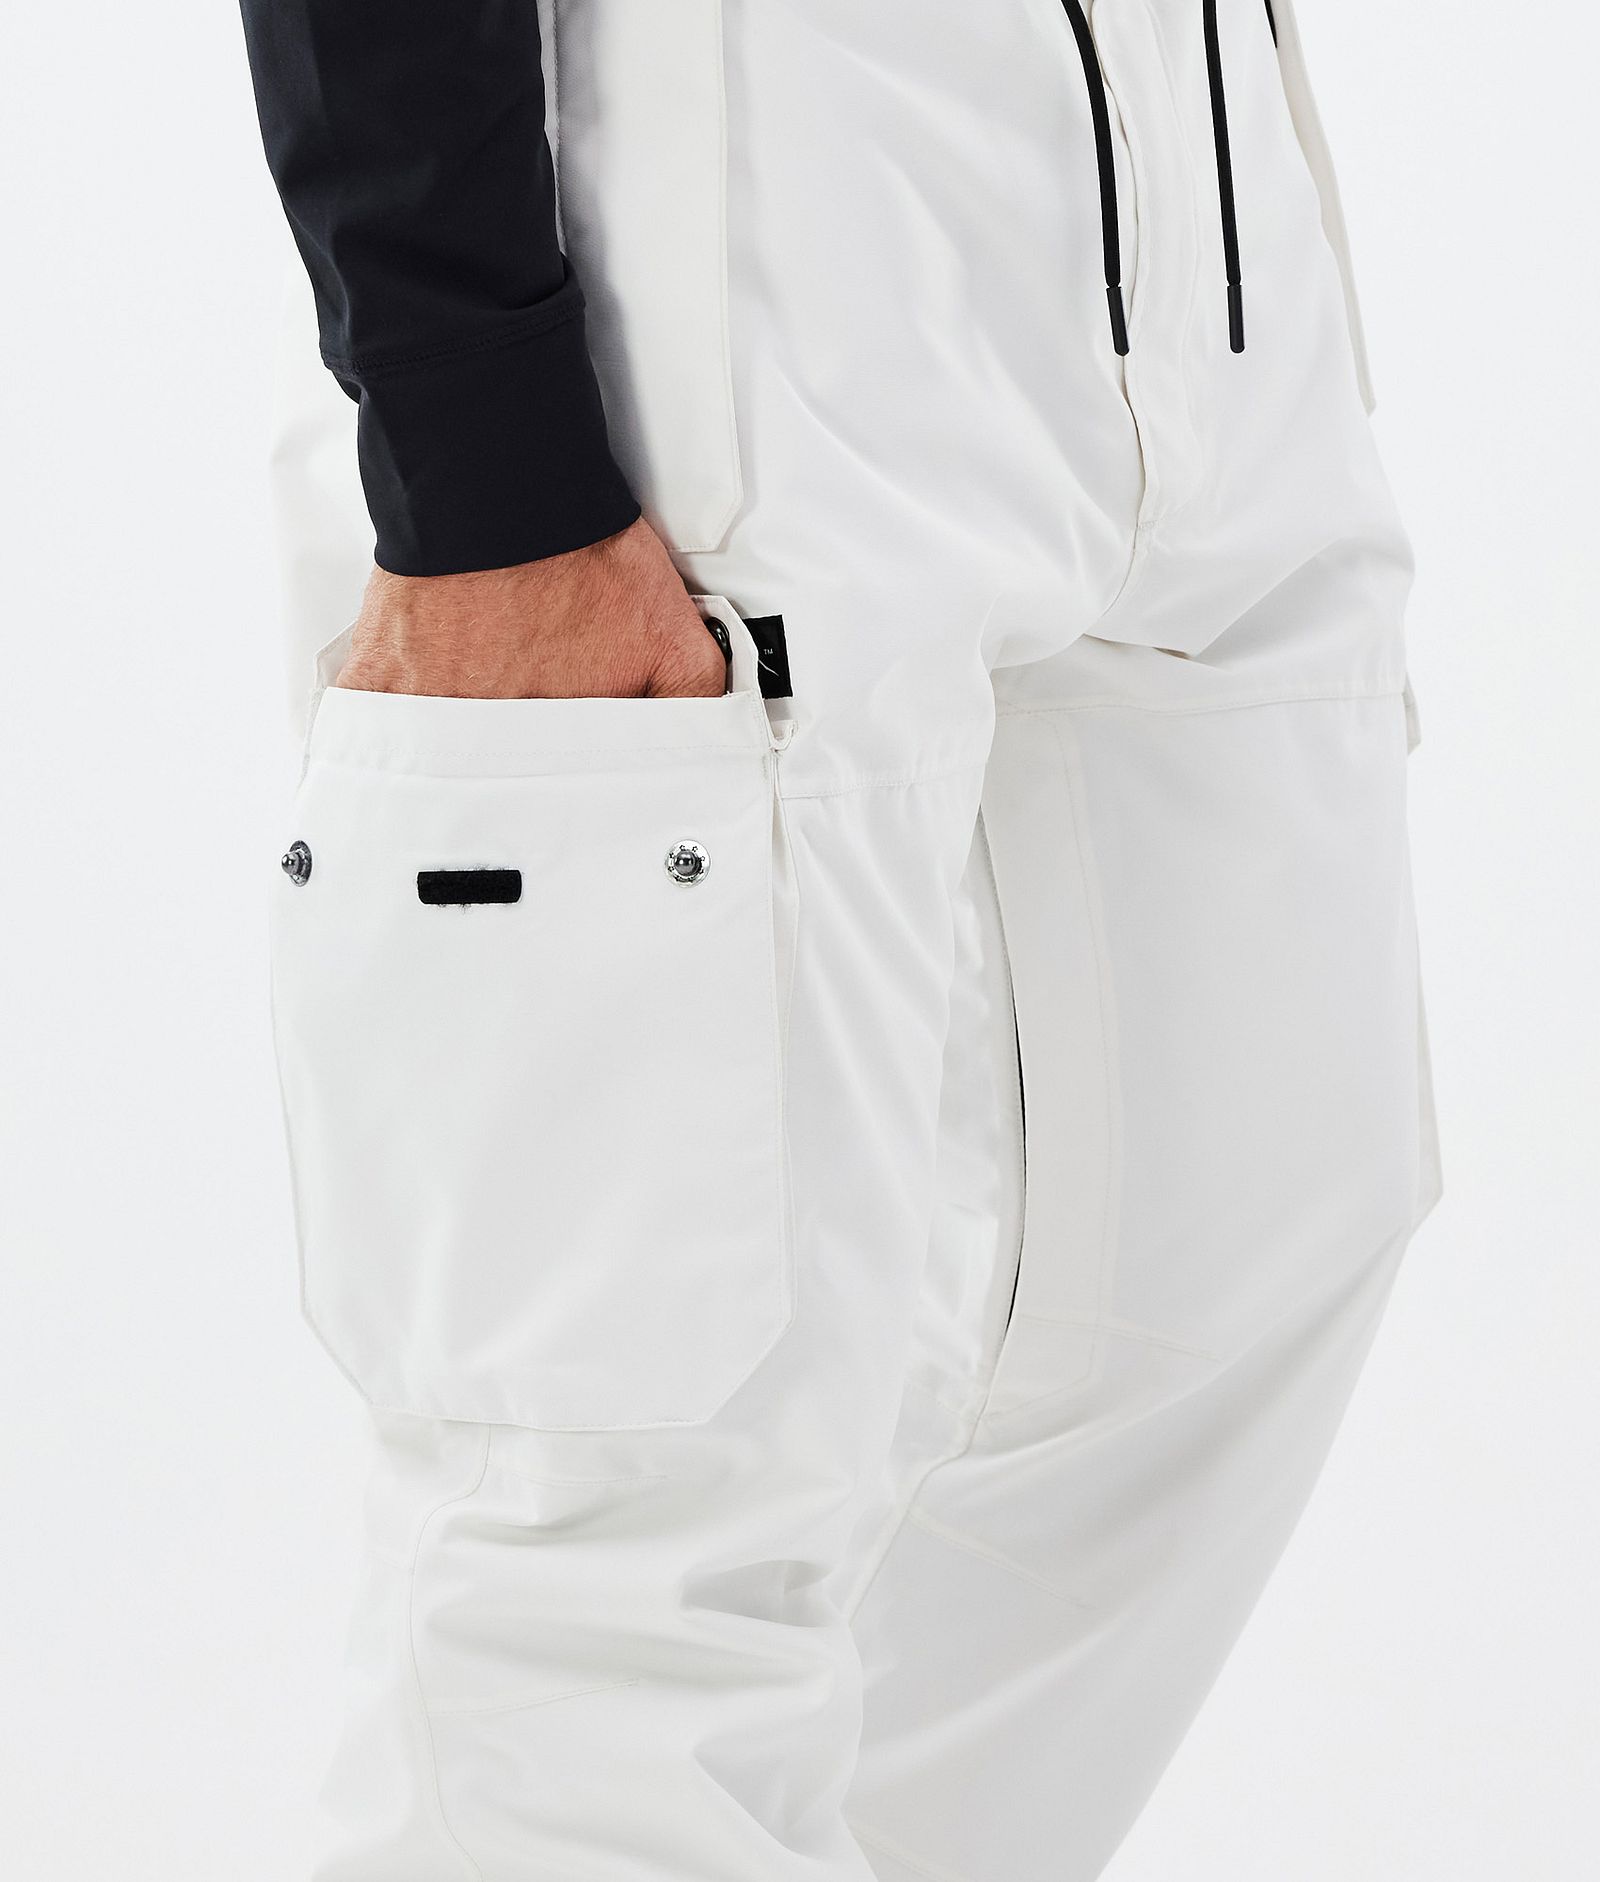 Dope Iconic Lyžařské Kalhoty Pánské Old White